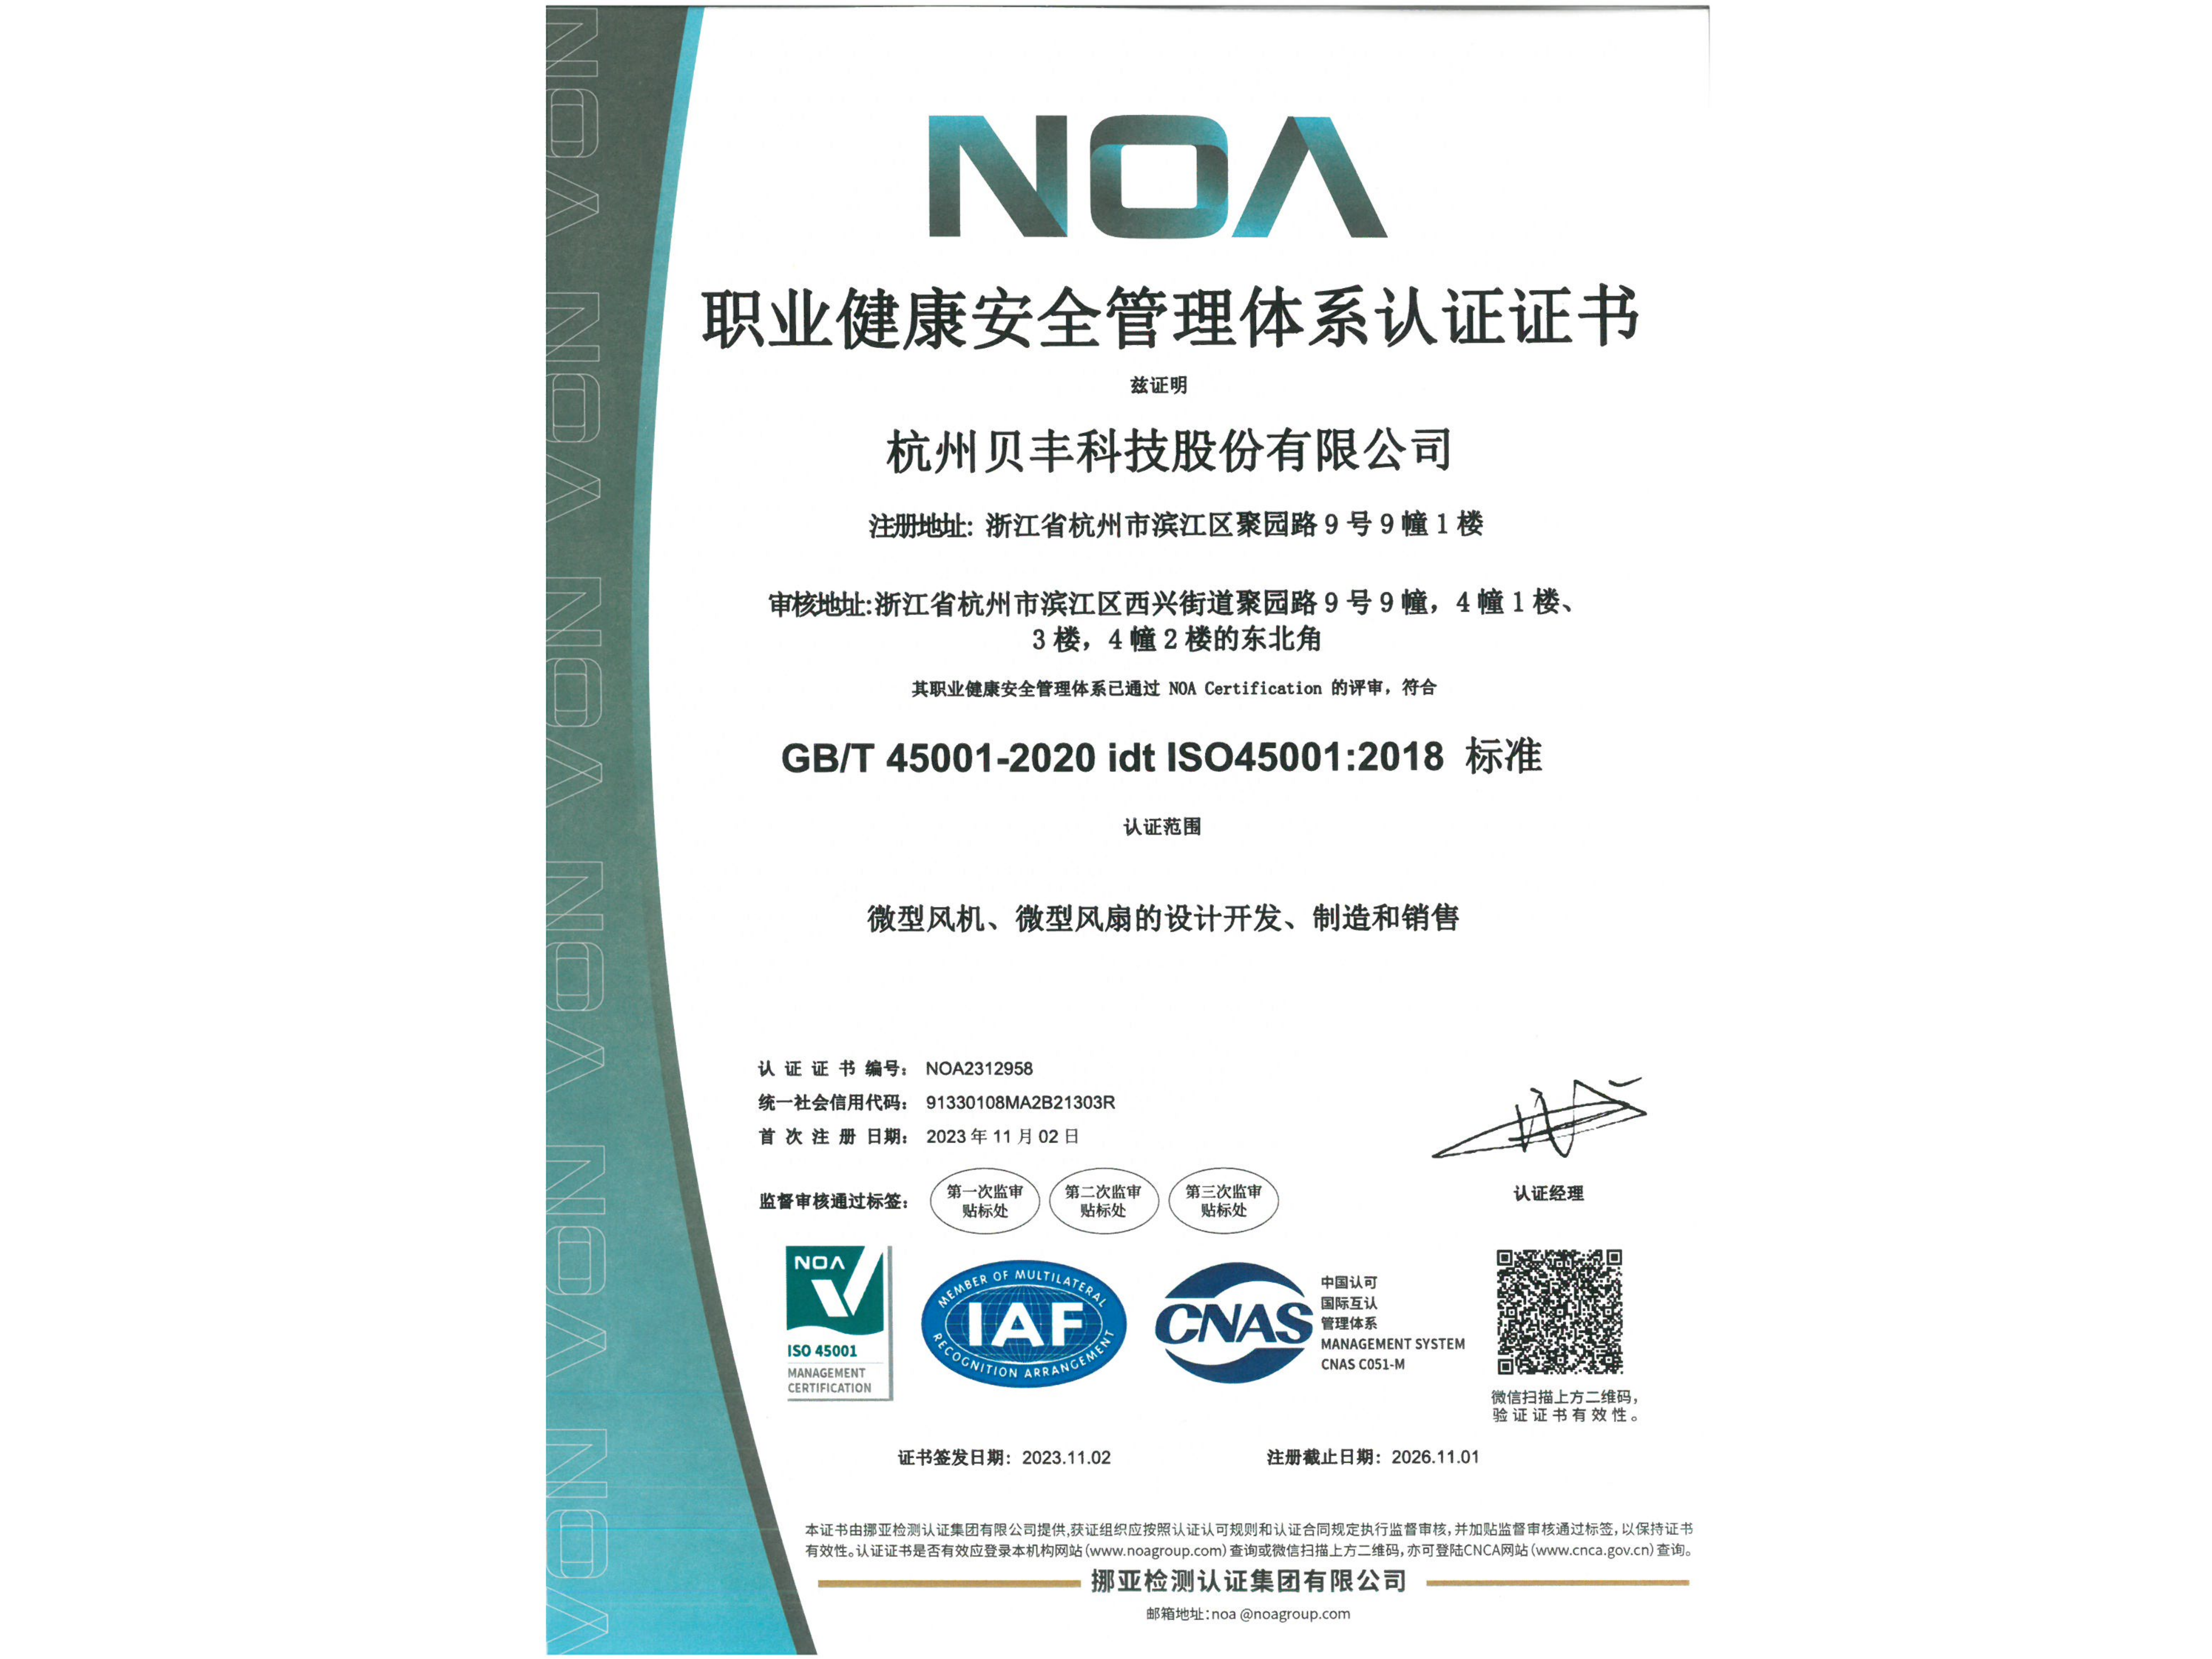 贝丰科技获得 ISO45001:2018 标准认证